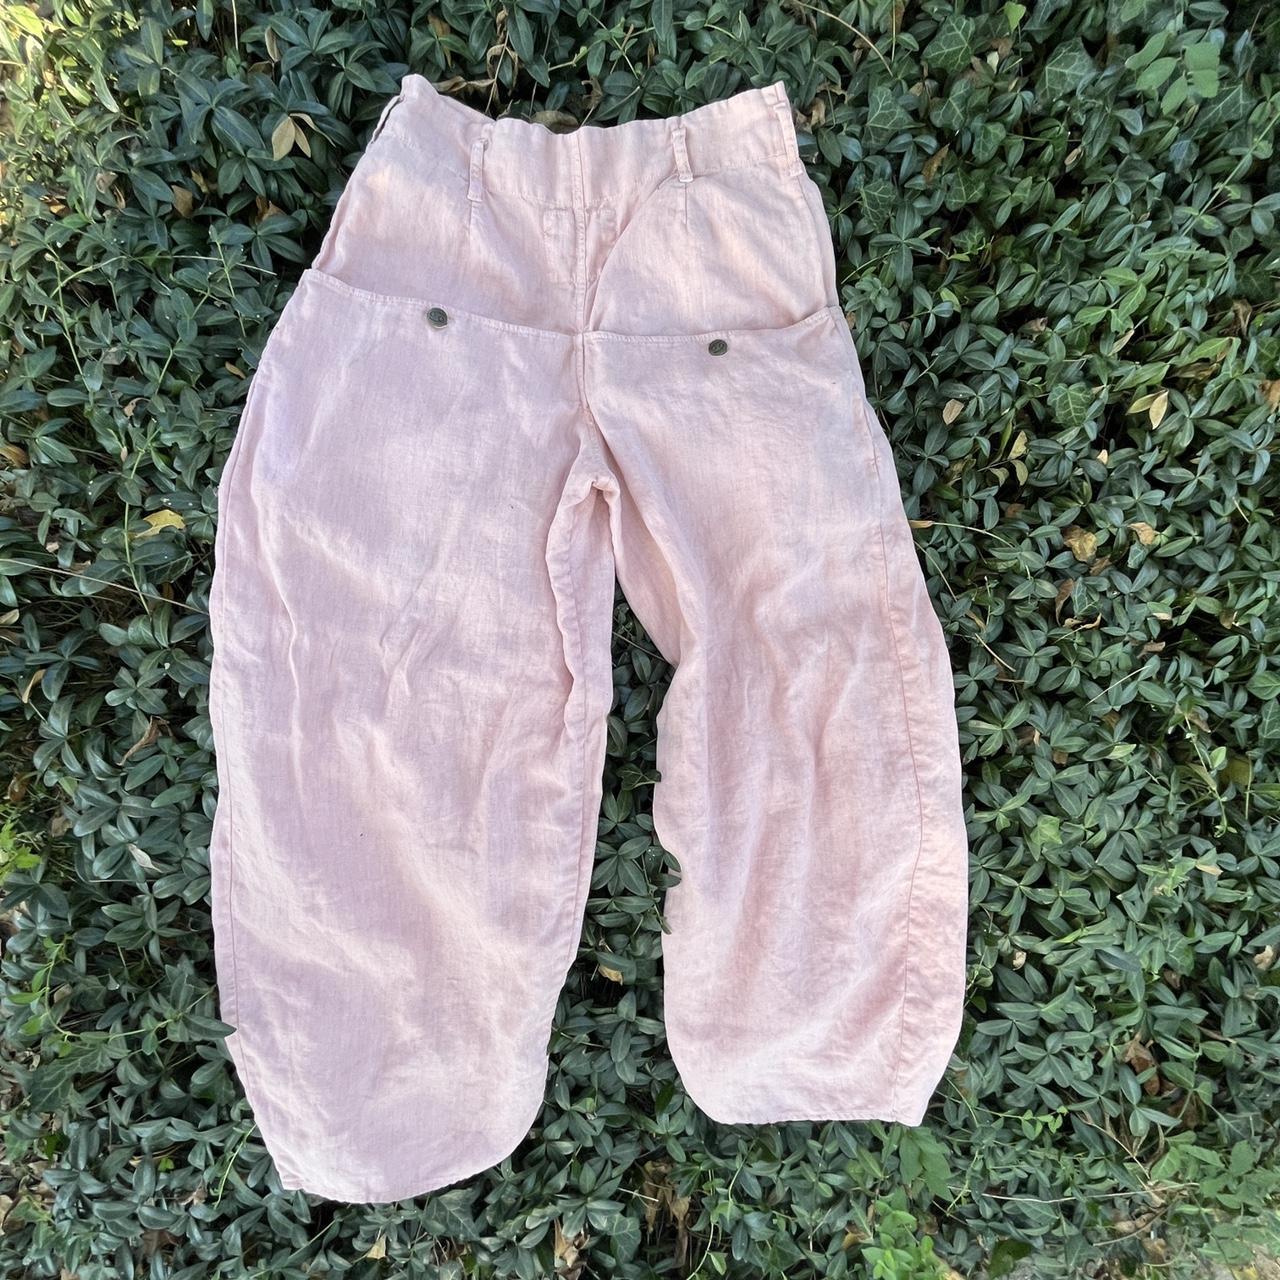 Product Image 2 - Sixty nine US linen pants